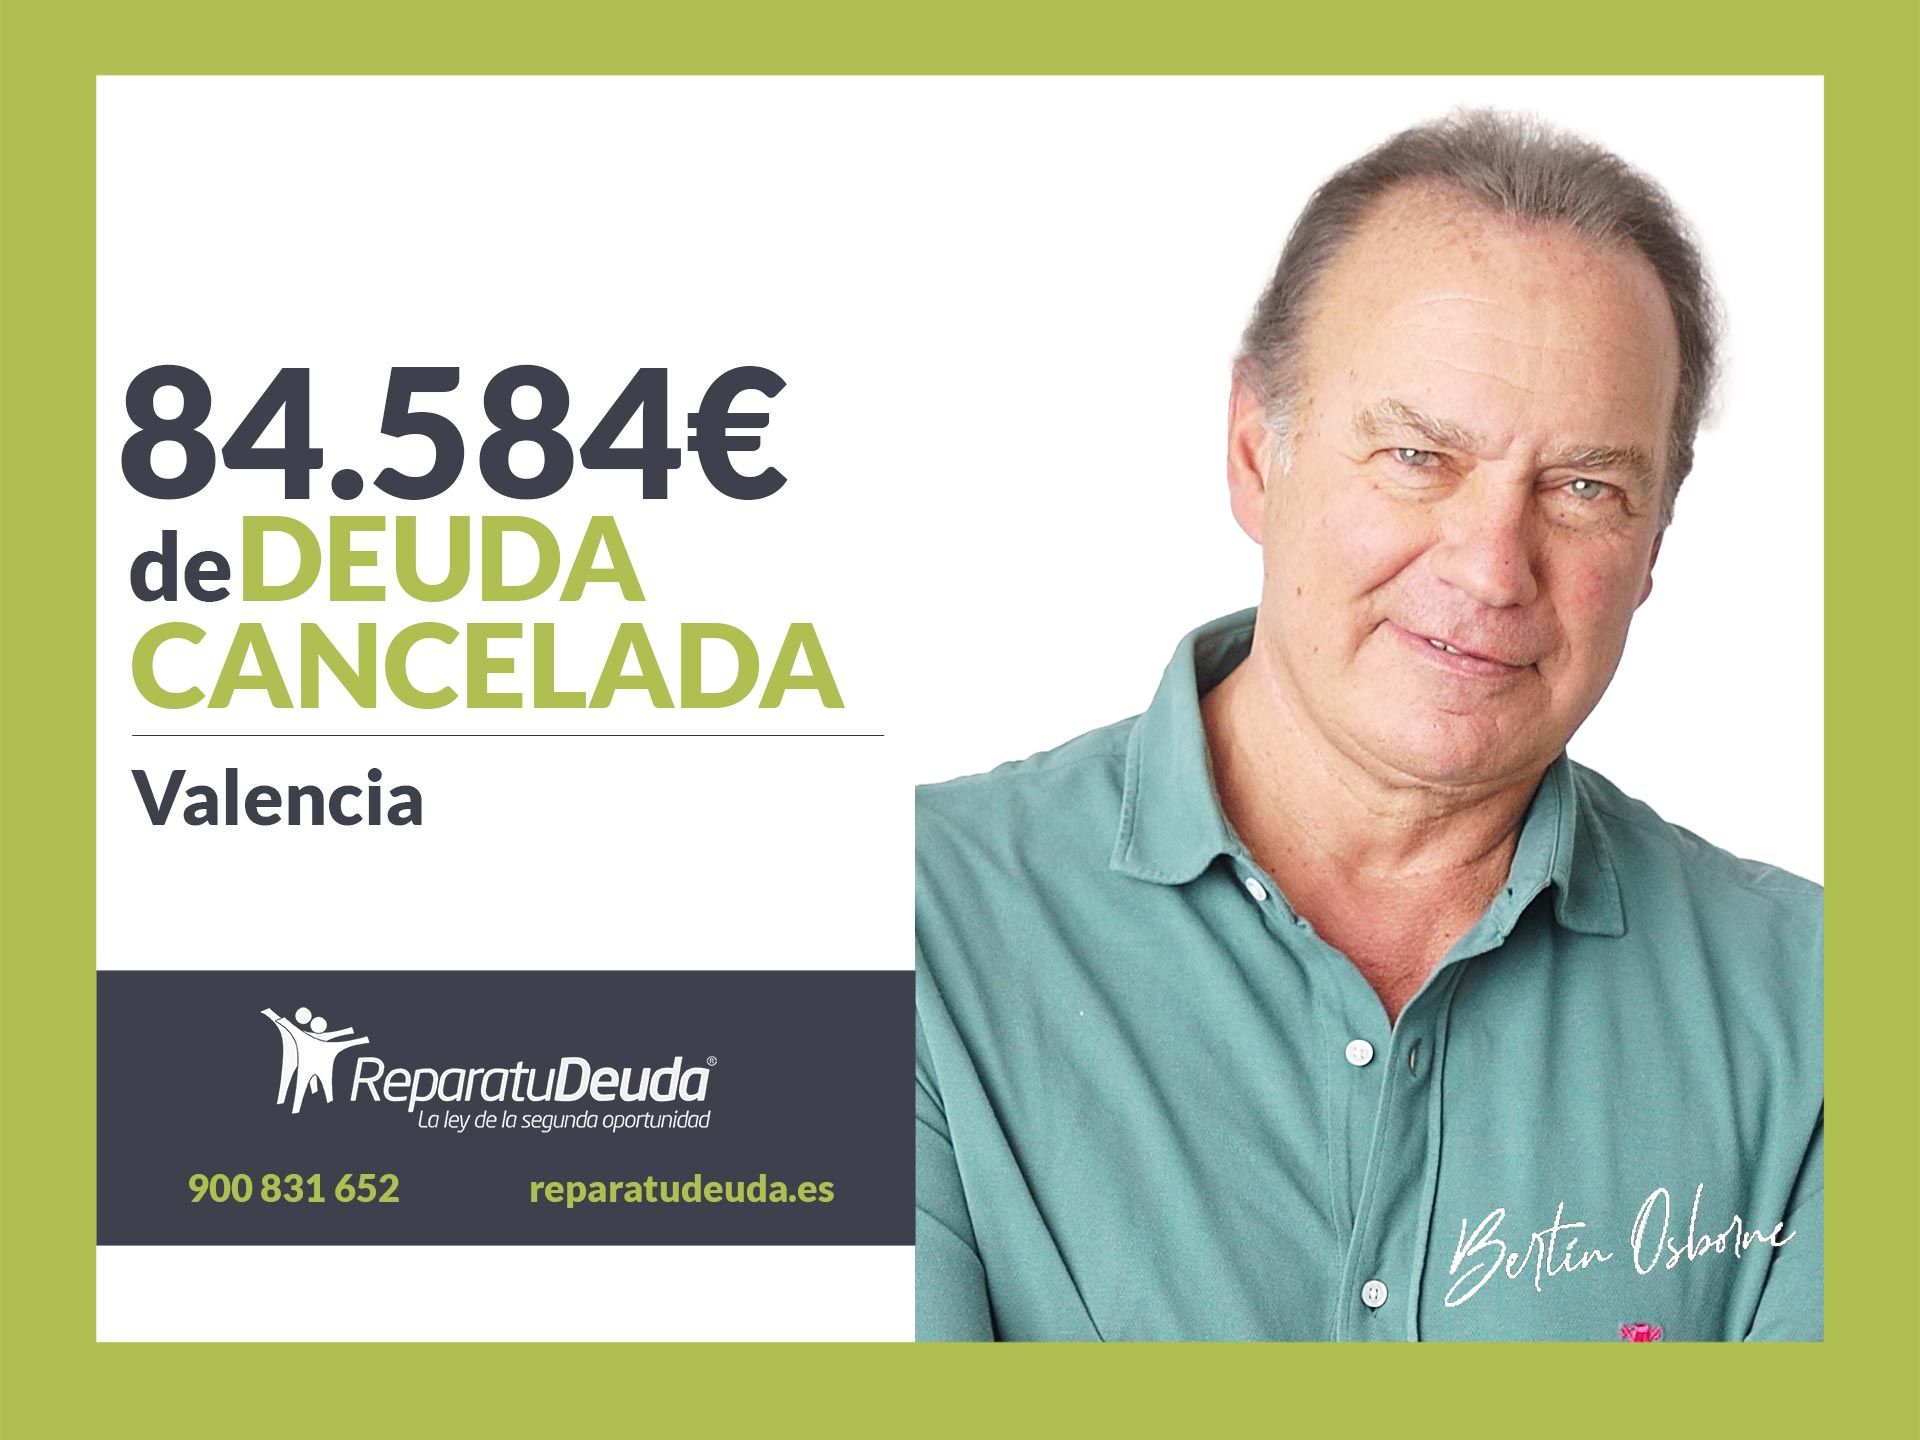 Repara tu Deuda Abogados cancela 84.584? en Valencia con la Ley de Segunda Oportunidad